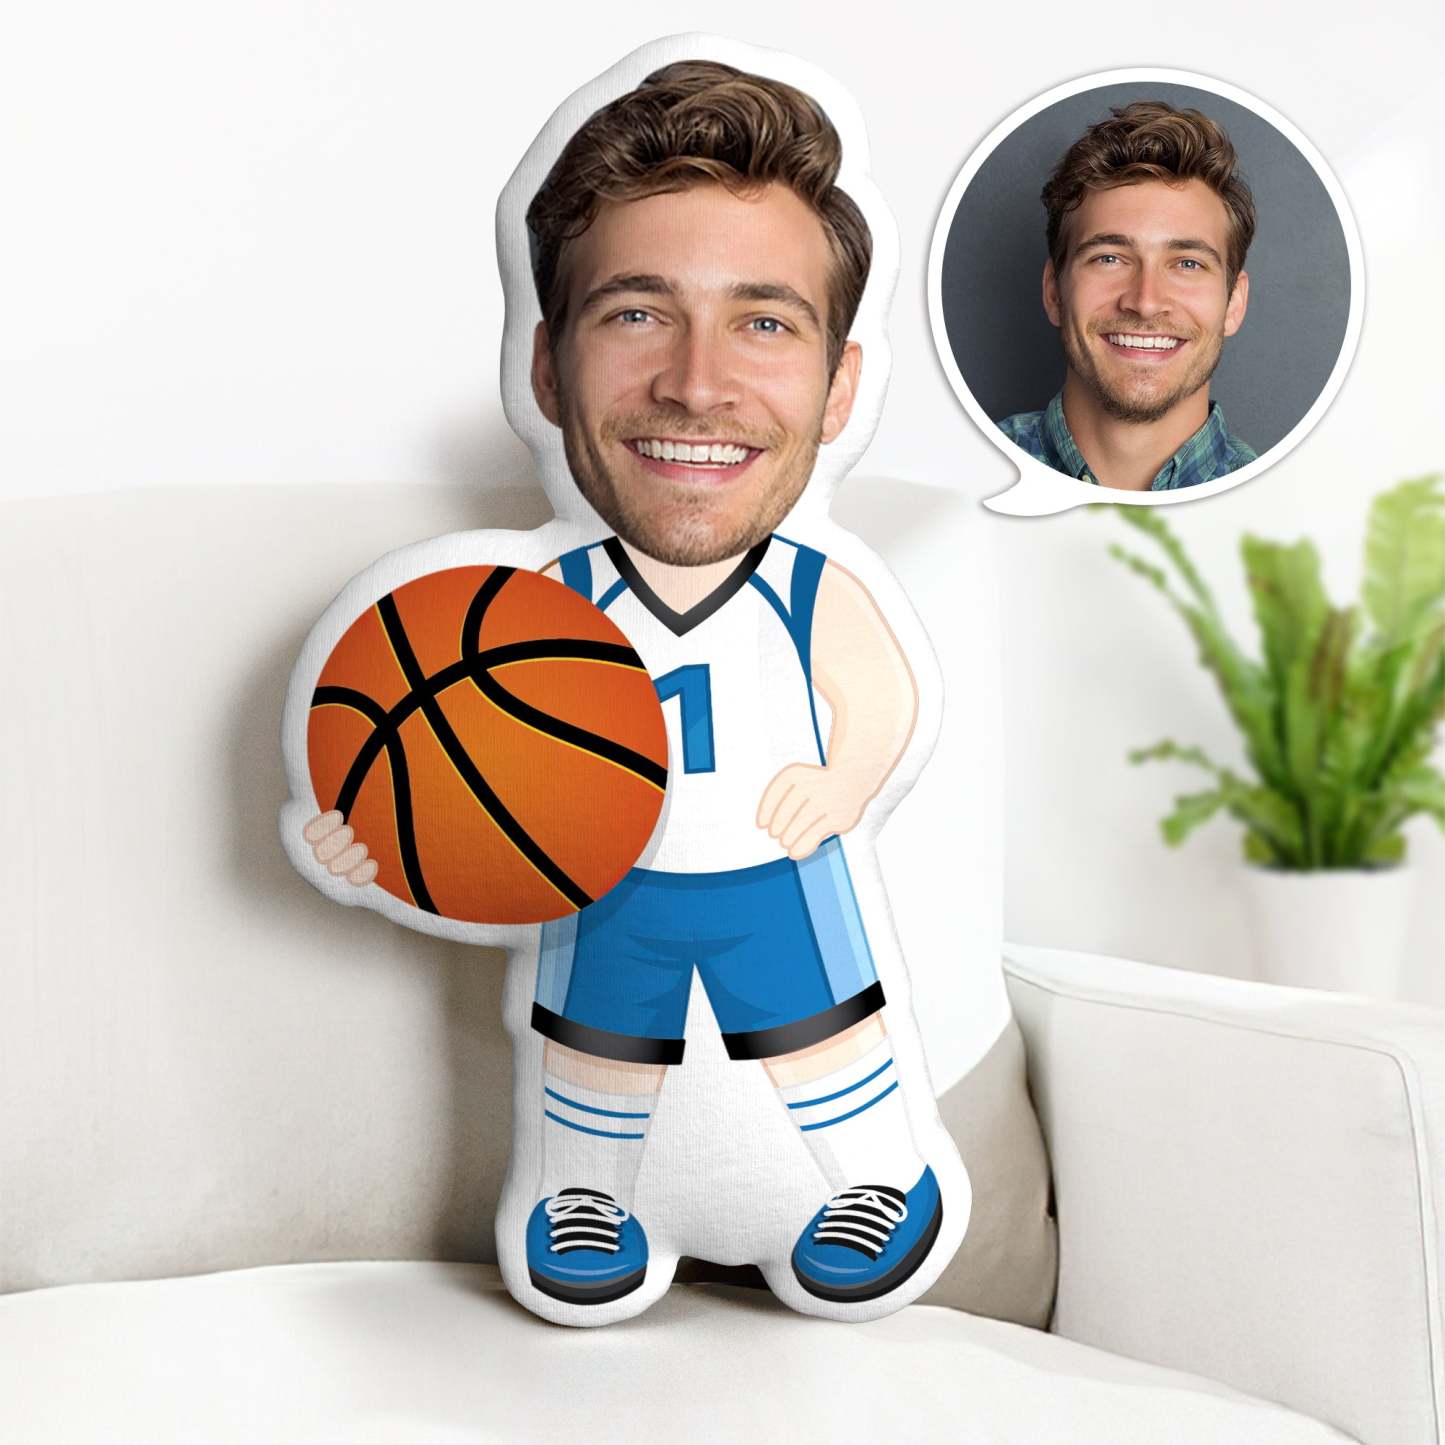 Der Kundenspezifische Vatertags-minime-wurfs-kissen Personalisierter Basketball-spieler Minime-wurfs-kissen - soufeelde